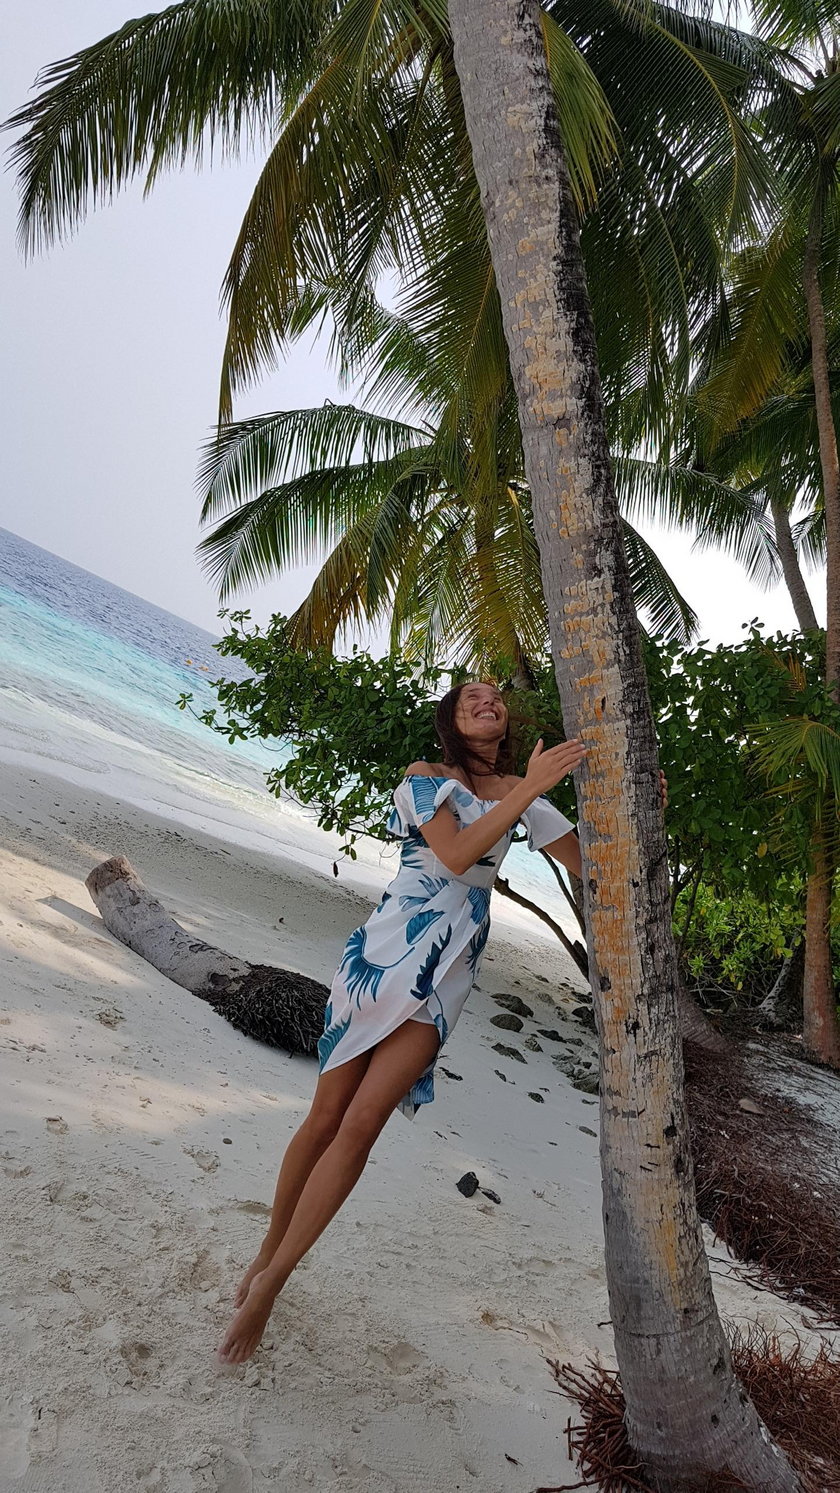 Agata Steczkowska na wakacjach na Malediwach